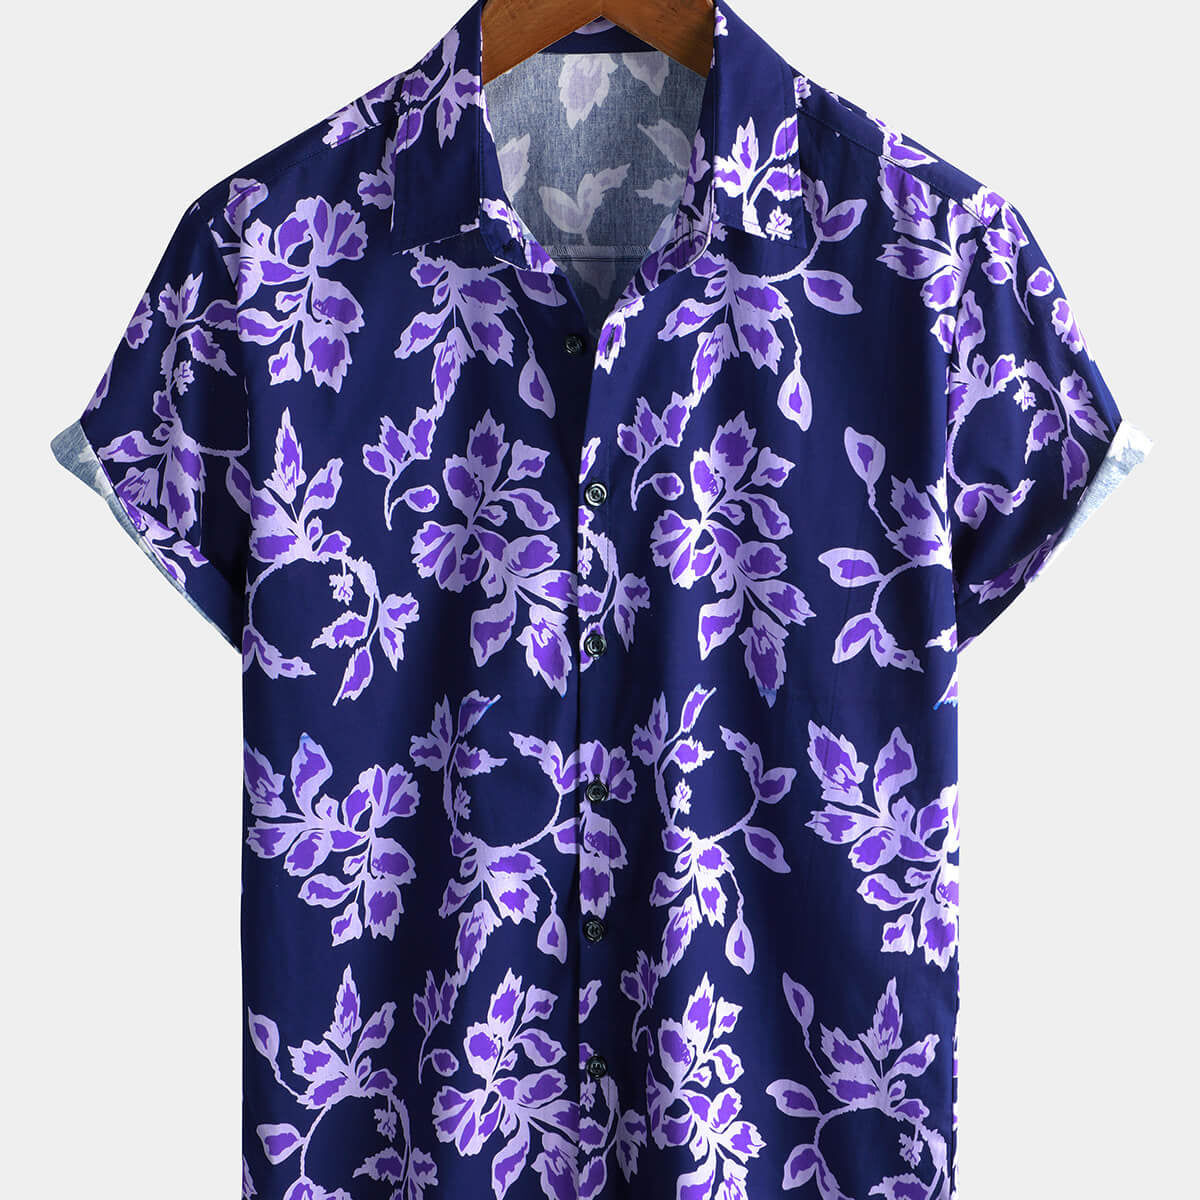 Men's Purple Floral Vintage 100% Cotton Short Sleeve Shirt